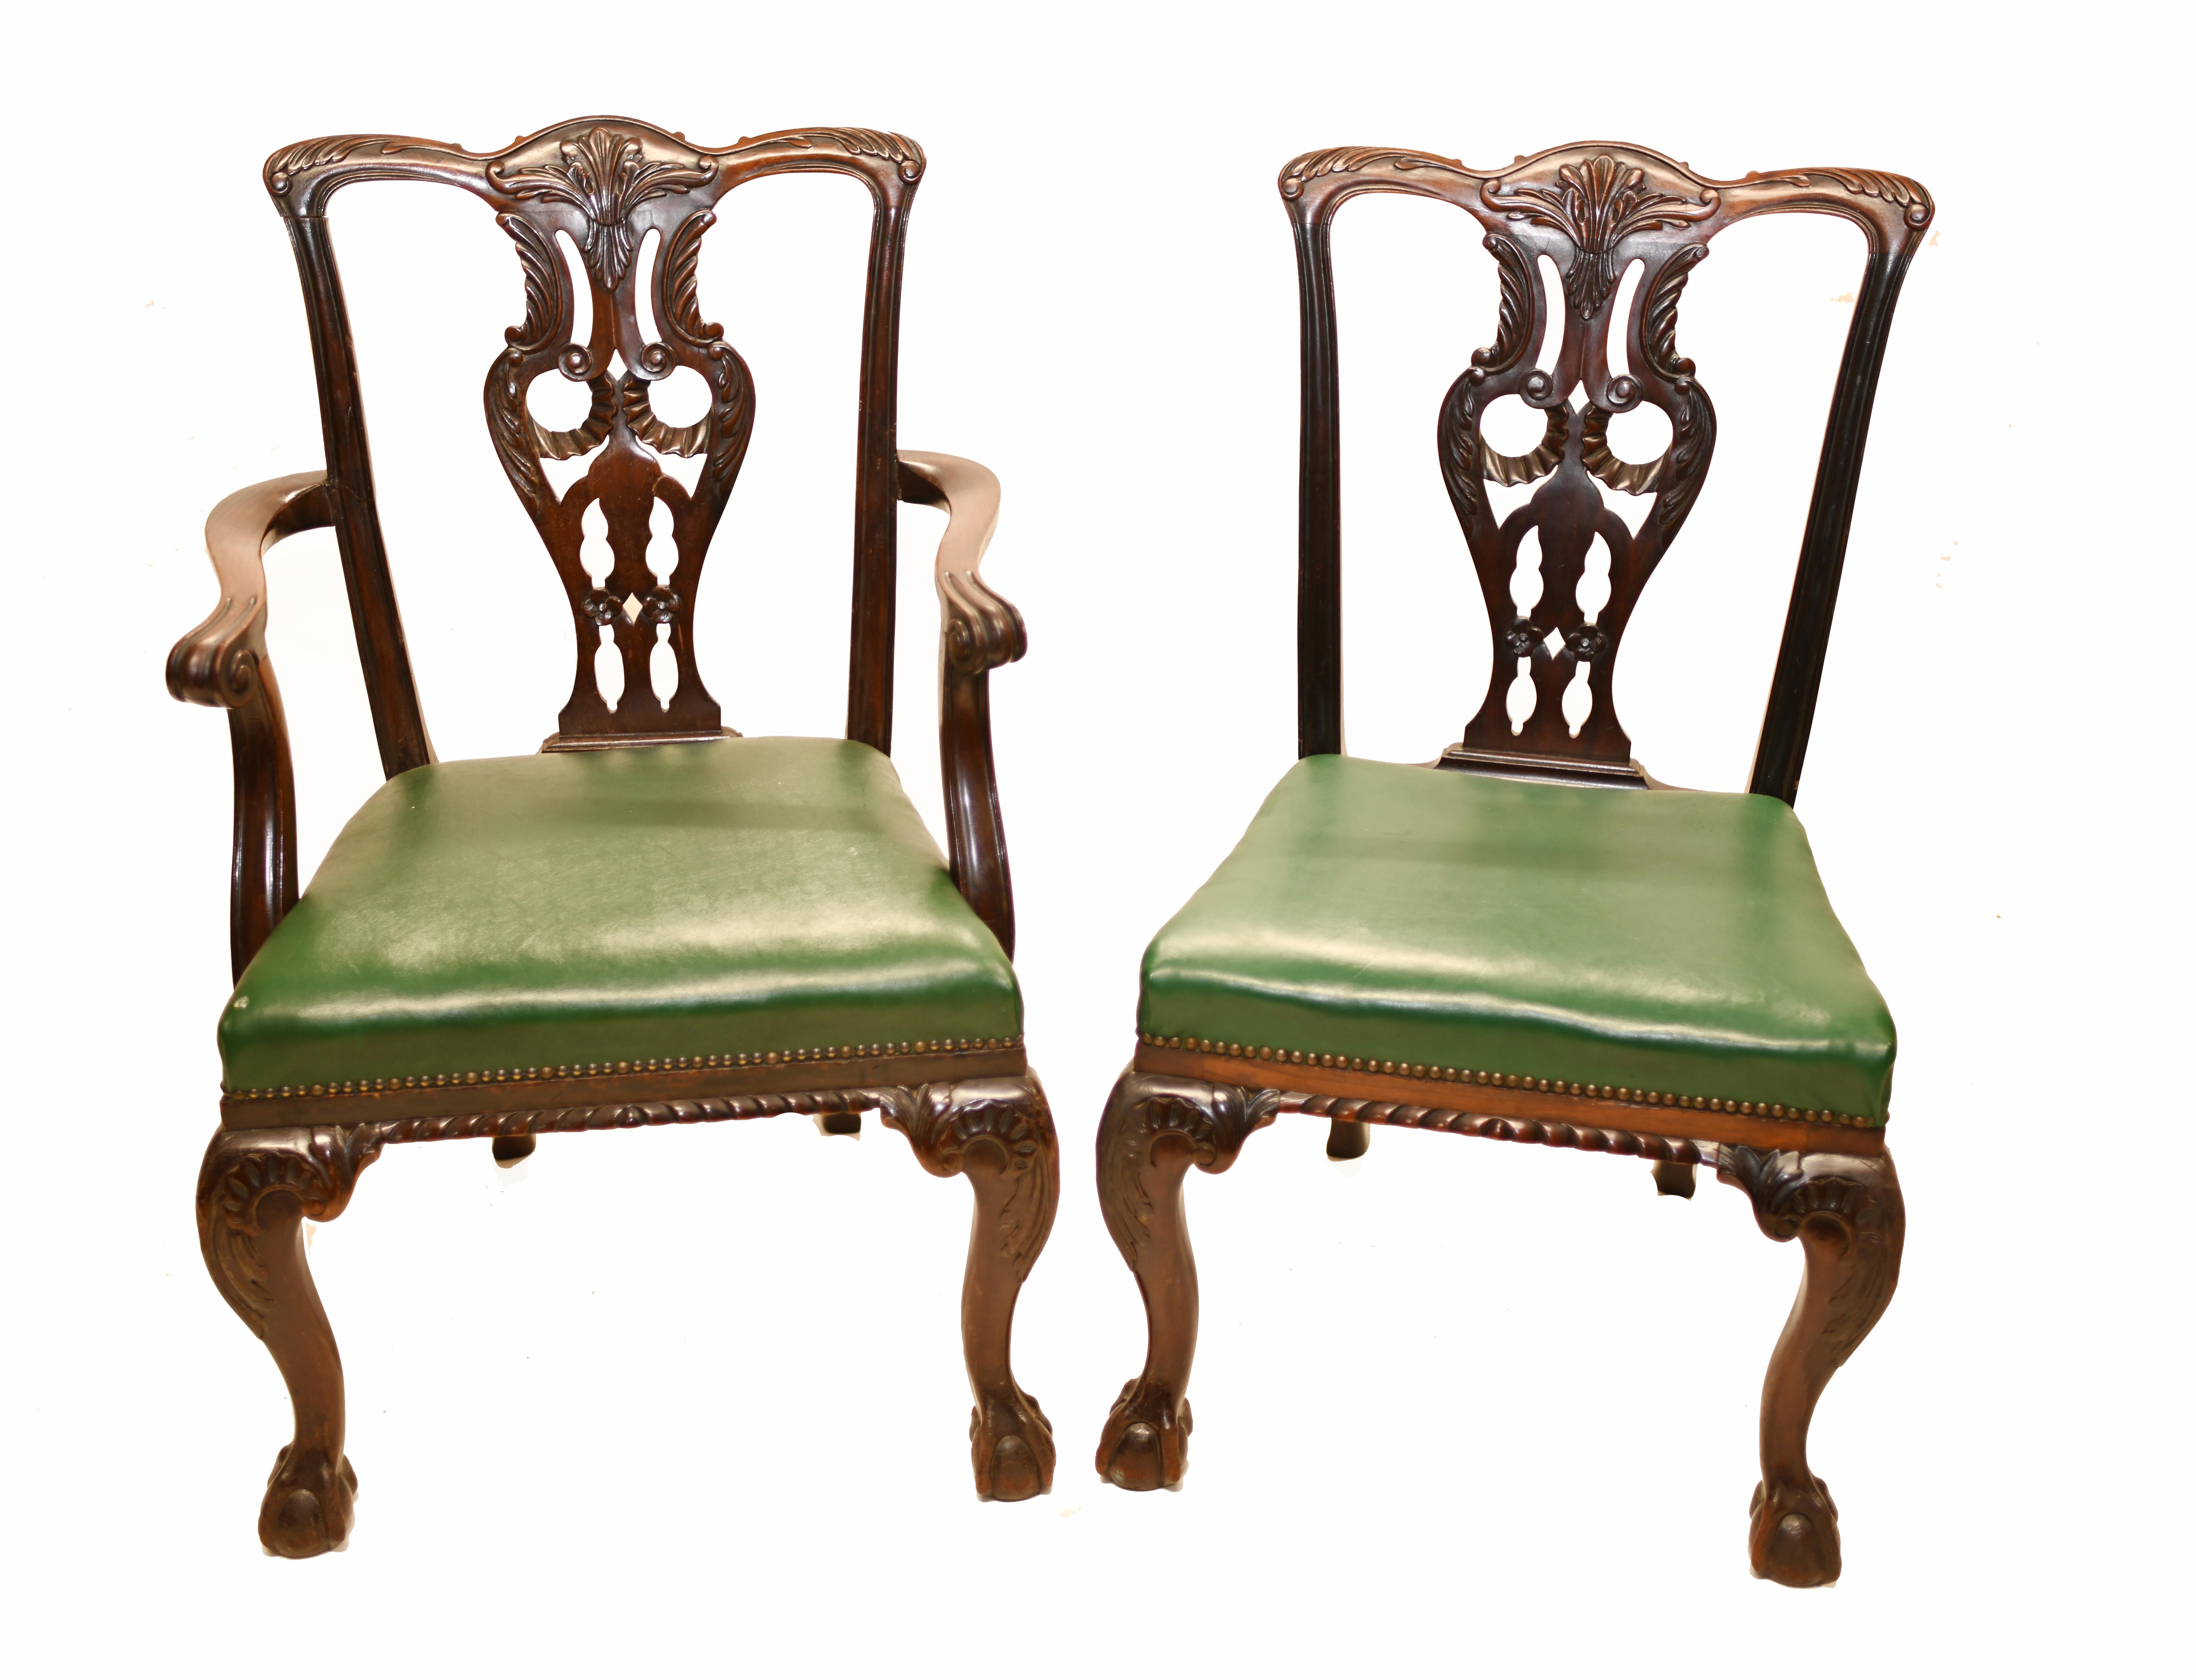 Eine Reihe von zehn Chippendale-Stühlen aus Mahagoni mit Ledersitzen in hervorragender Qualität   
Die Stühle sind von Shoolbred & Co gestempelt   
James Shoolbred wurde im Jahr 1820 in der Tottenham Court Road in London gegründet. 
In den 1880er